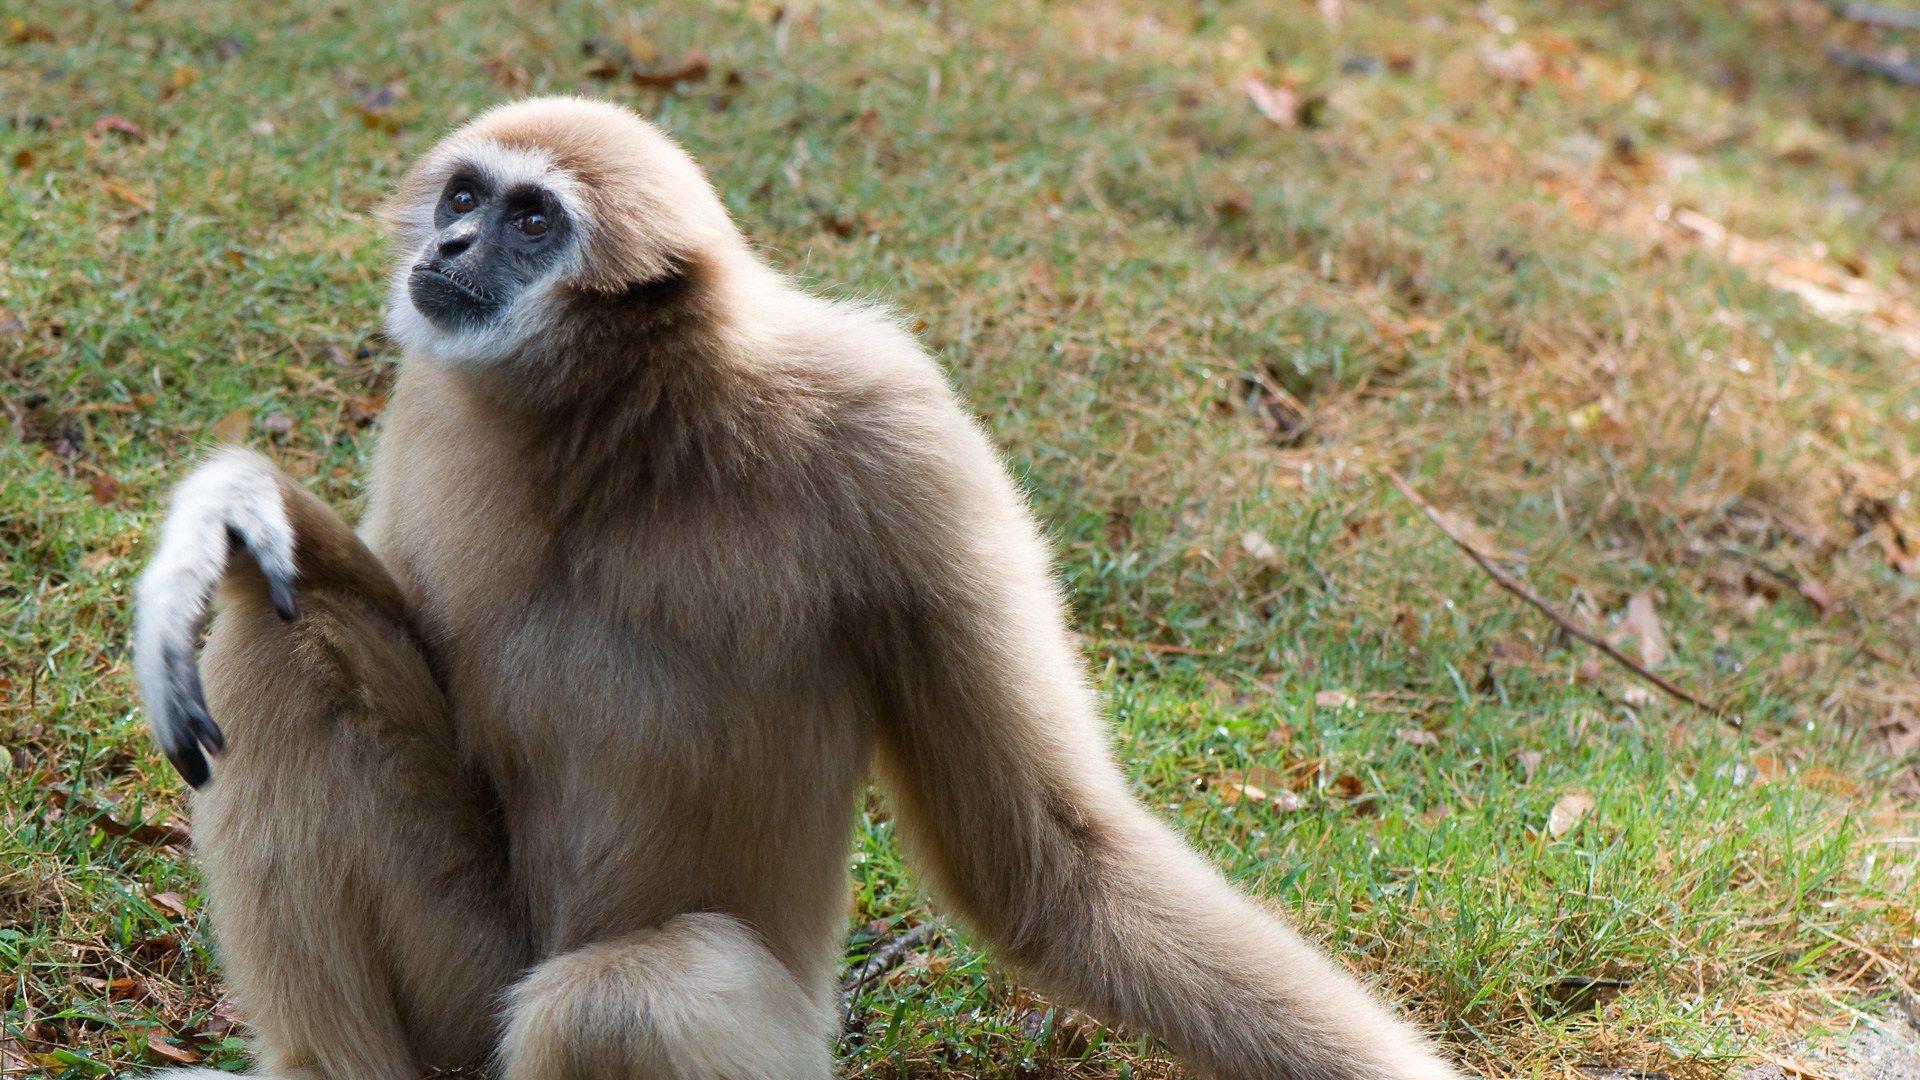 Gibbon Images  Free Download on Freepik